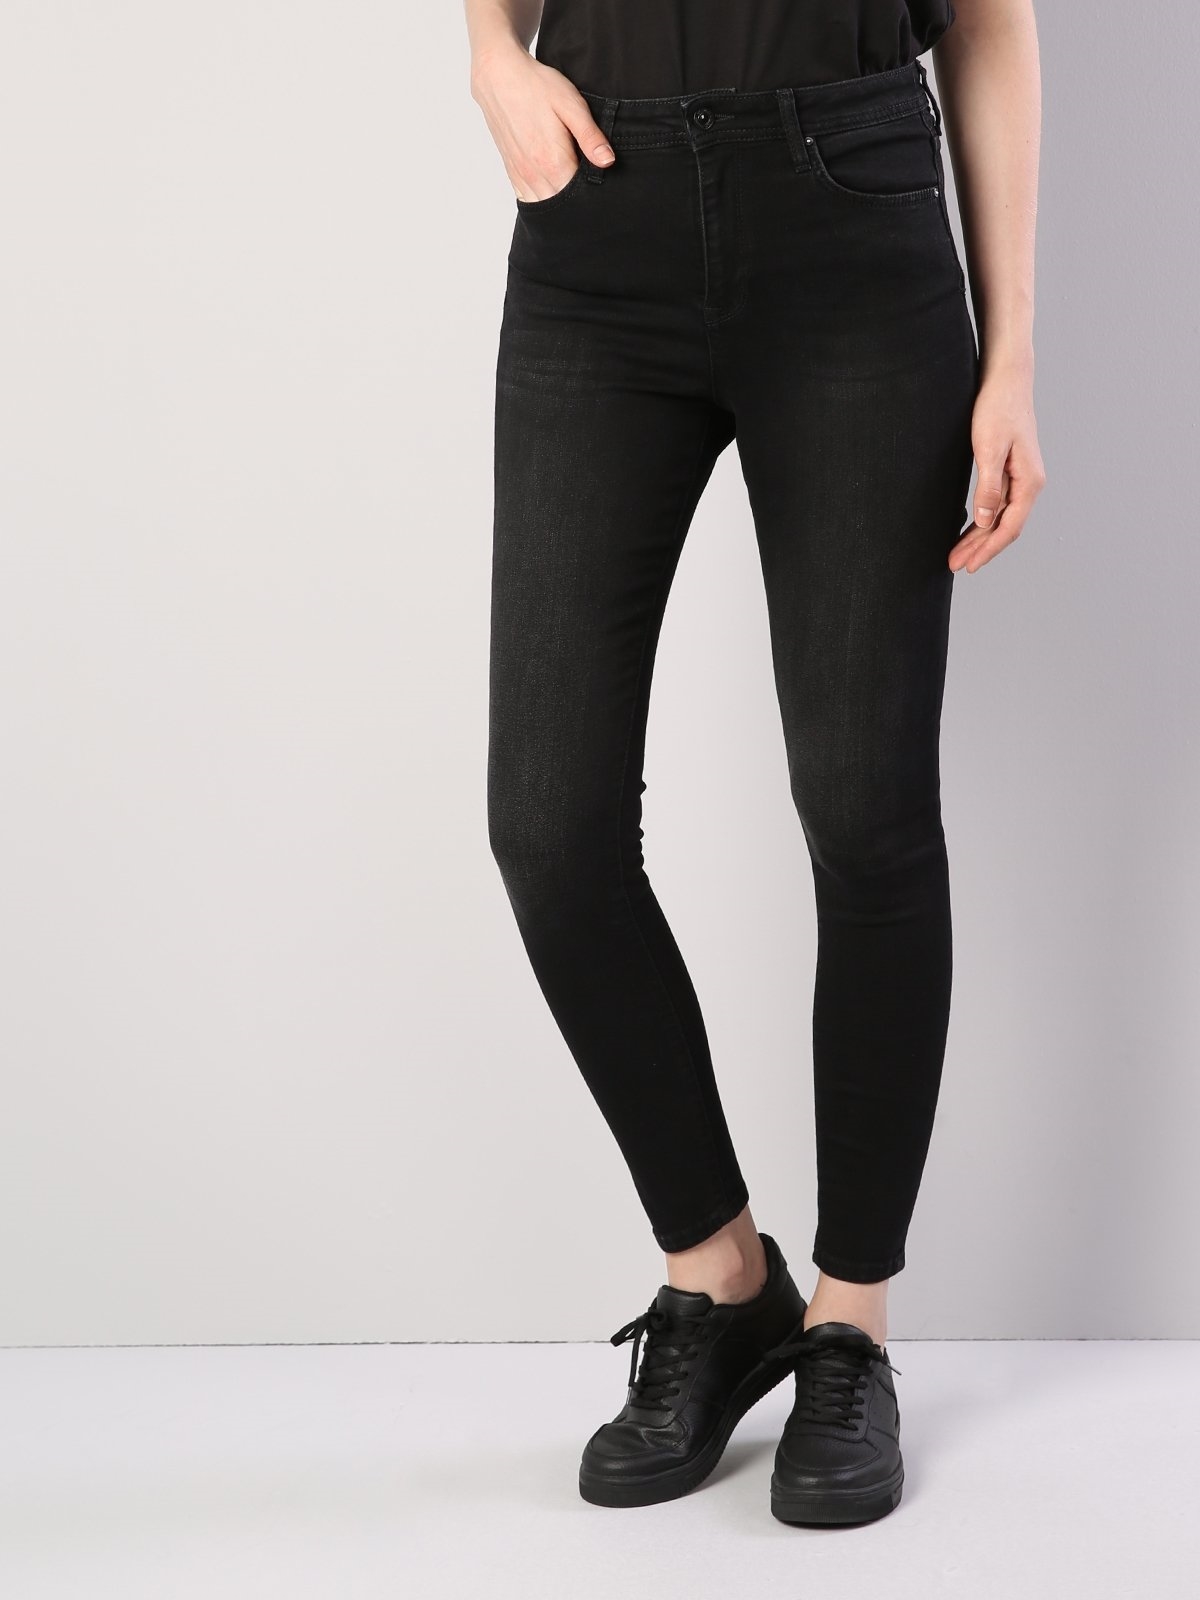 Colins 760 Dıana Yüksek Bel Dar Paça Super Slim Fit Siyah Kadın Jean Pantolon. 5